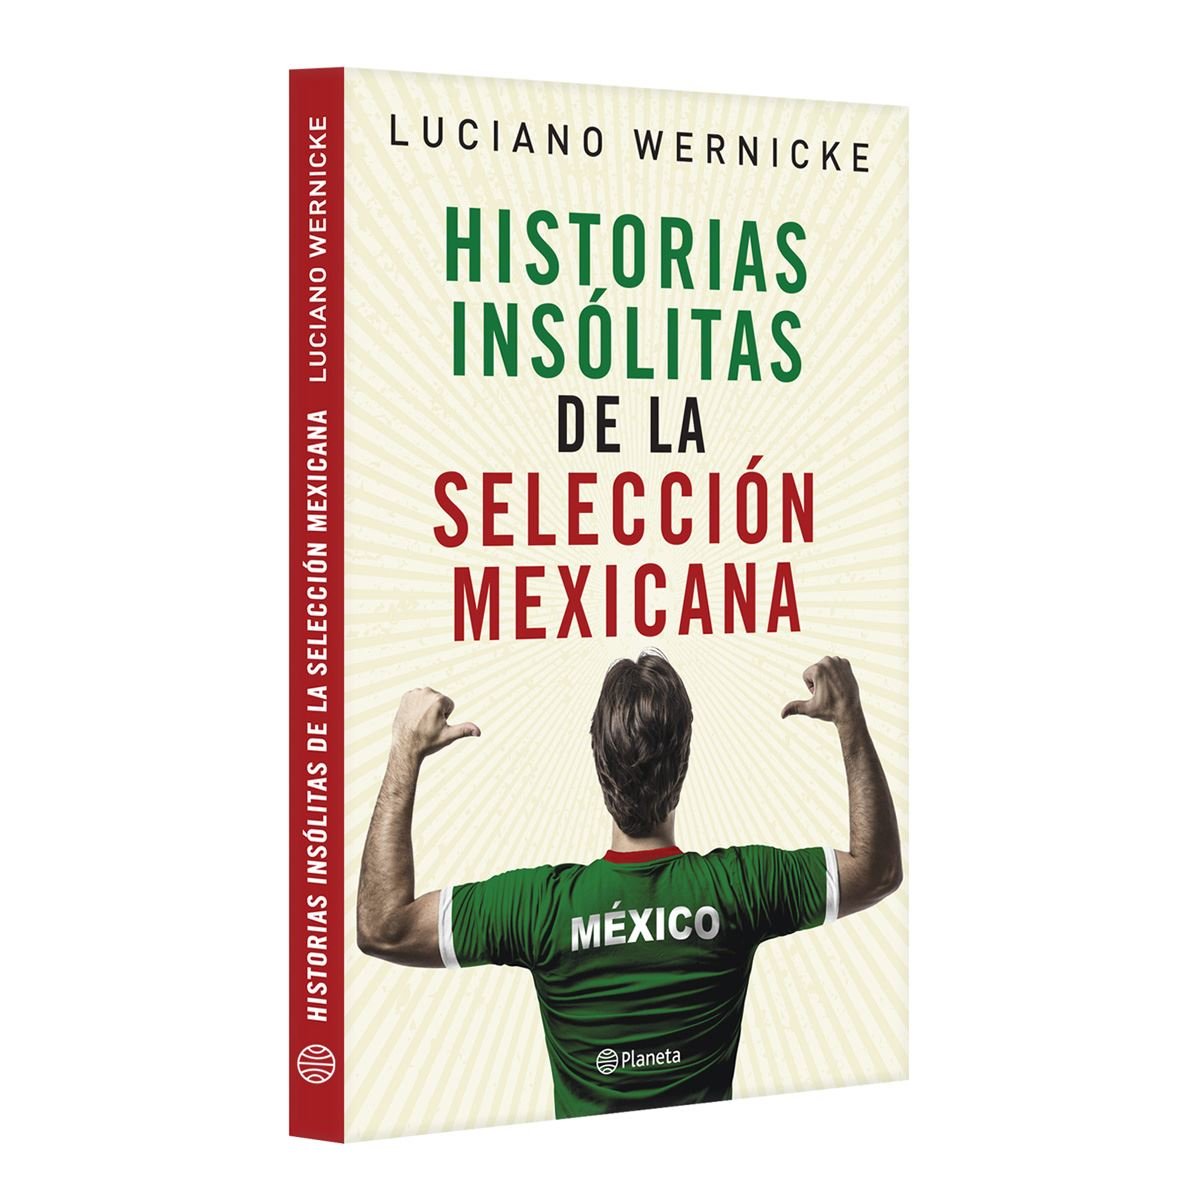 Historias insólitas de la selección mexicana